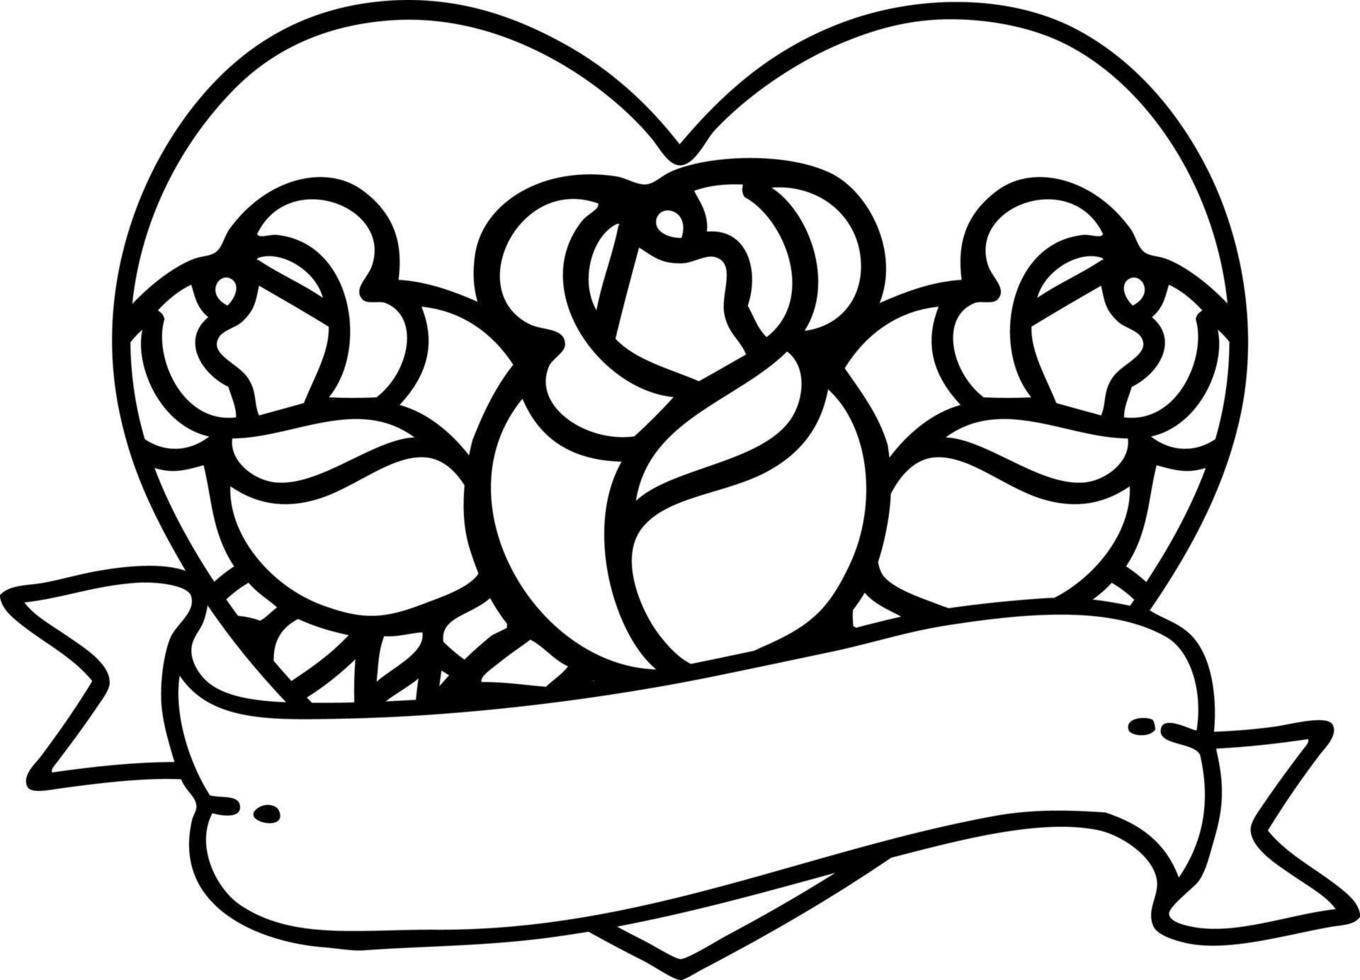 tatoeëren in zwart lijn stijl van een hart en banier met bloemen vector